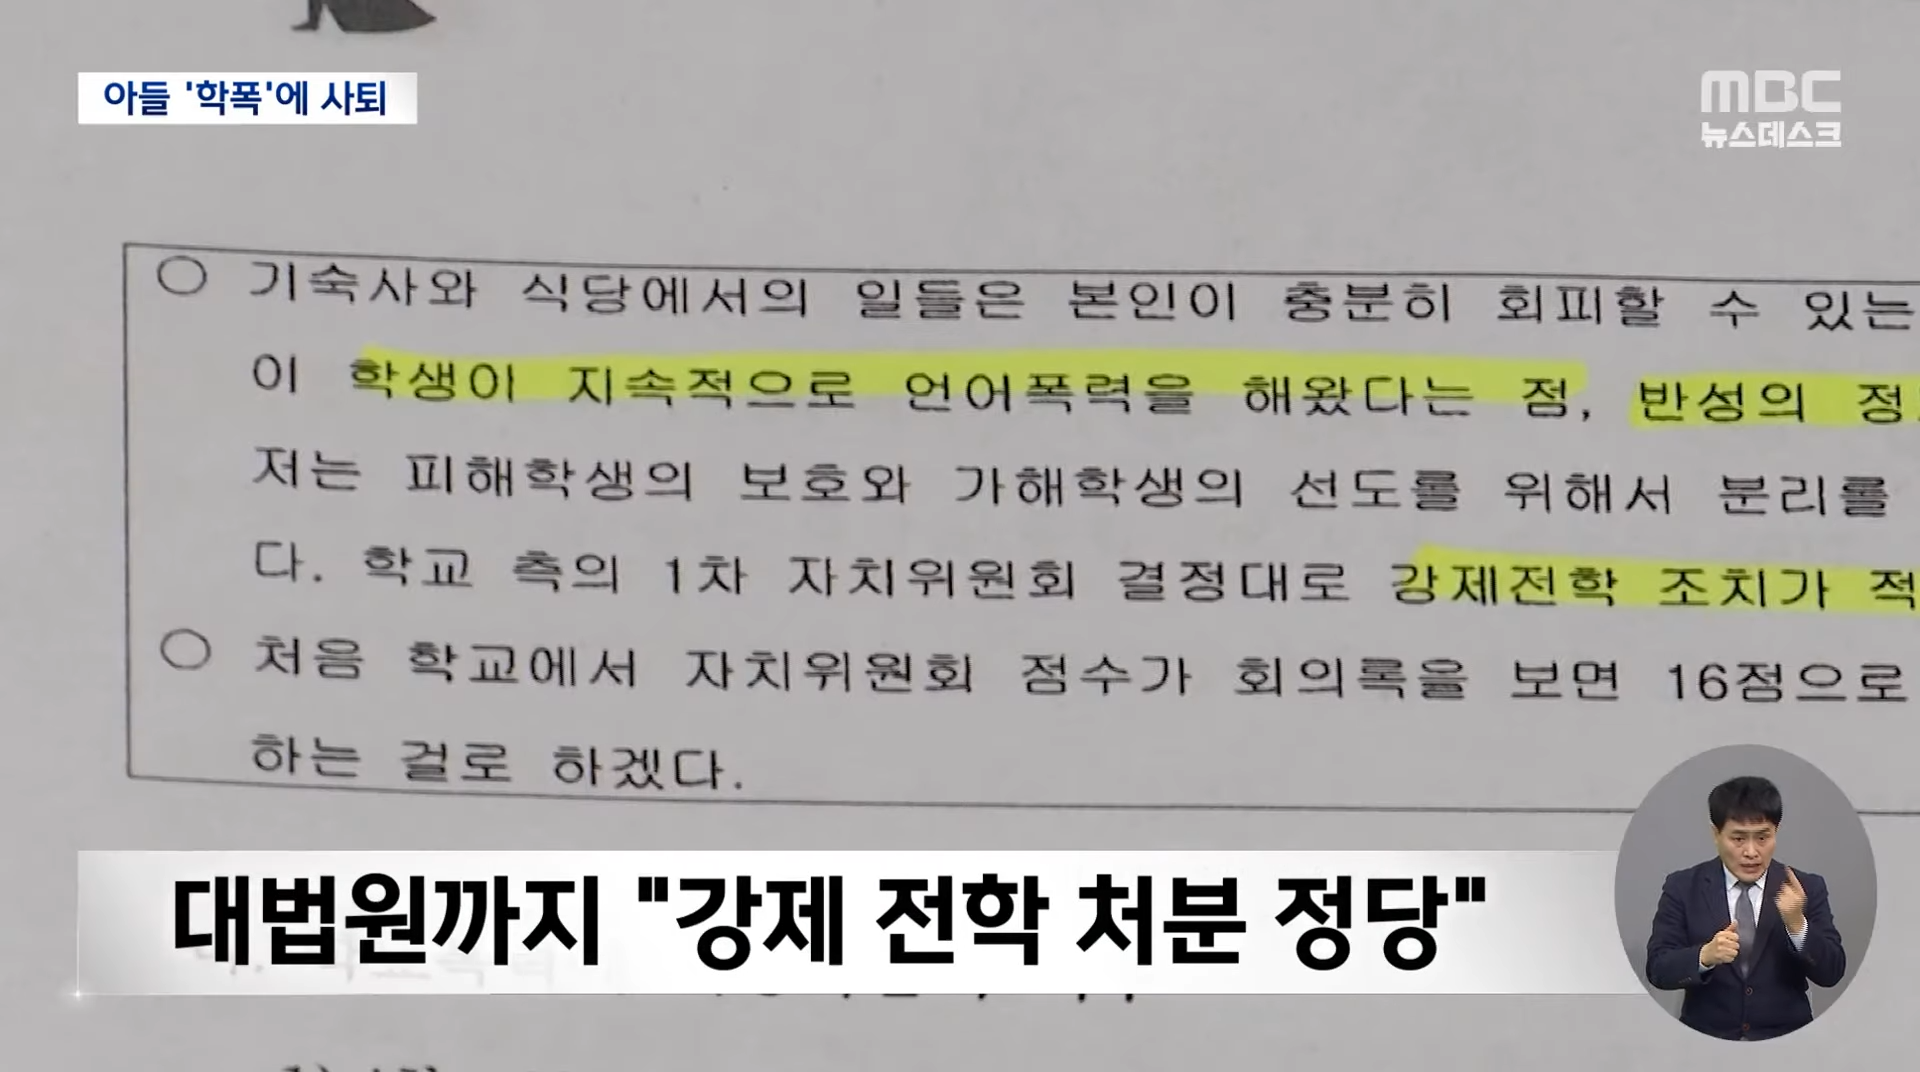 정순신 신임 국수본부장 '아들 학폭'에 자진 사퇴 (2023.02.25_뉴스데스크_MBC) 1-35 screenshot (1).png